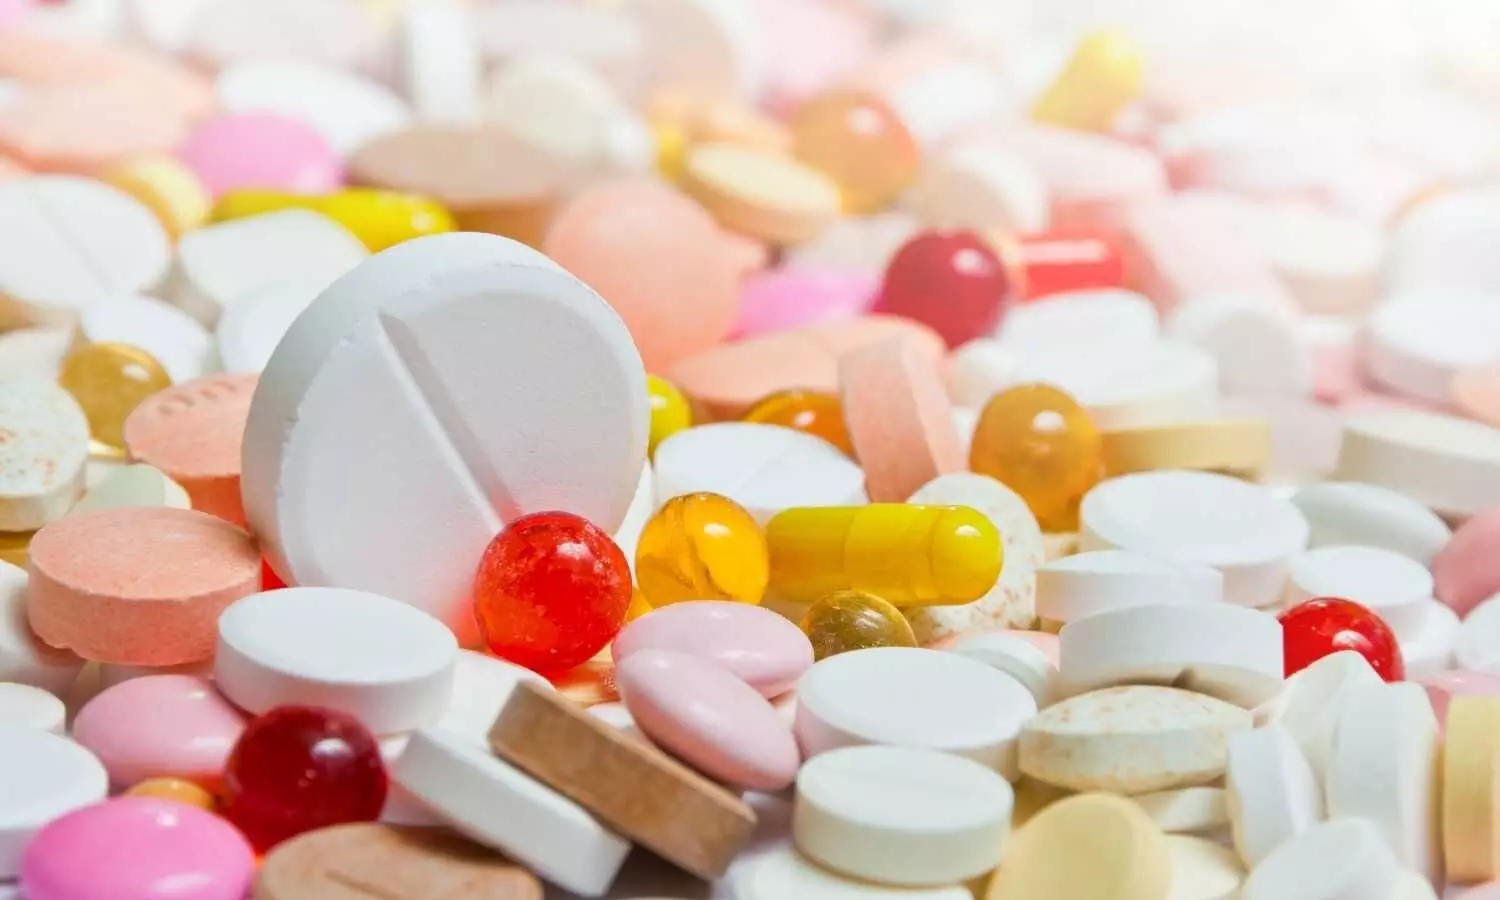 Natco Pharma unveils first generic version of Pomalyst capsules in Australia